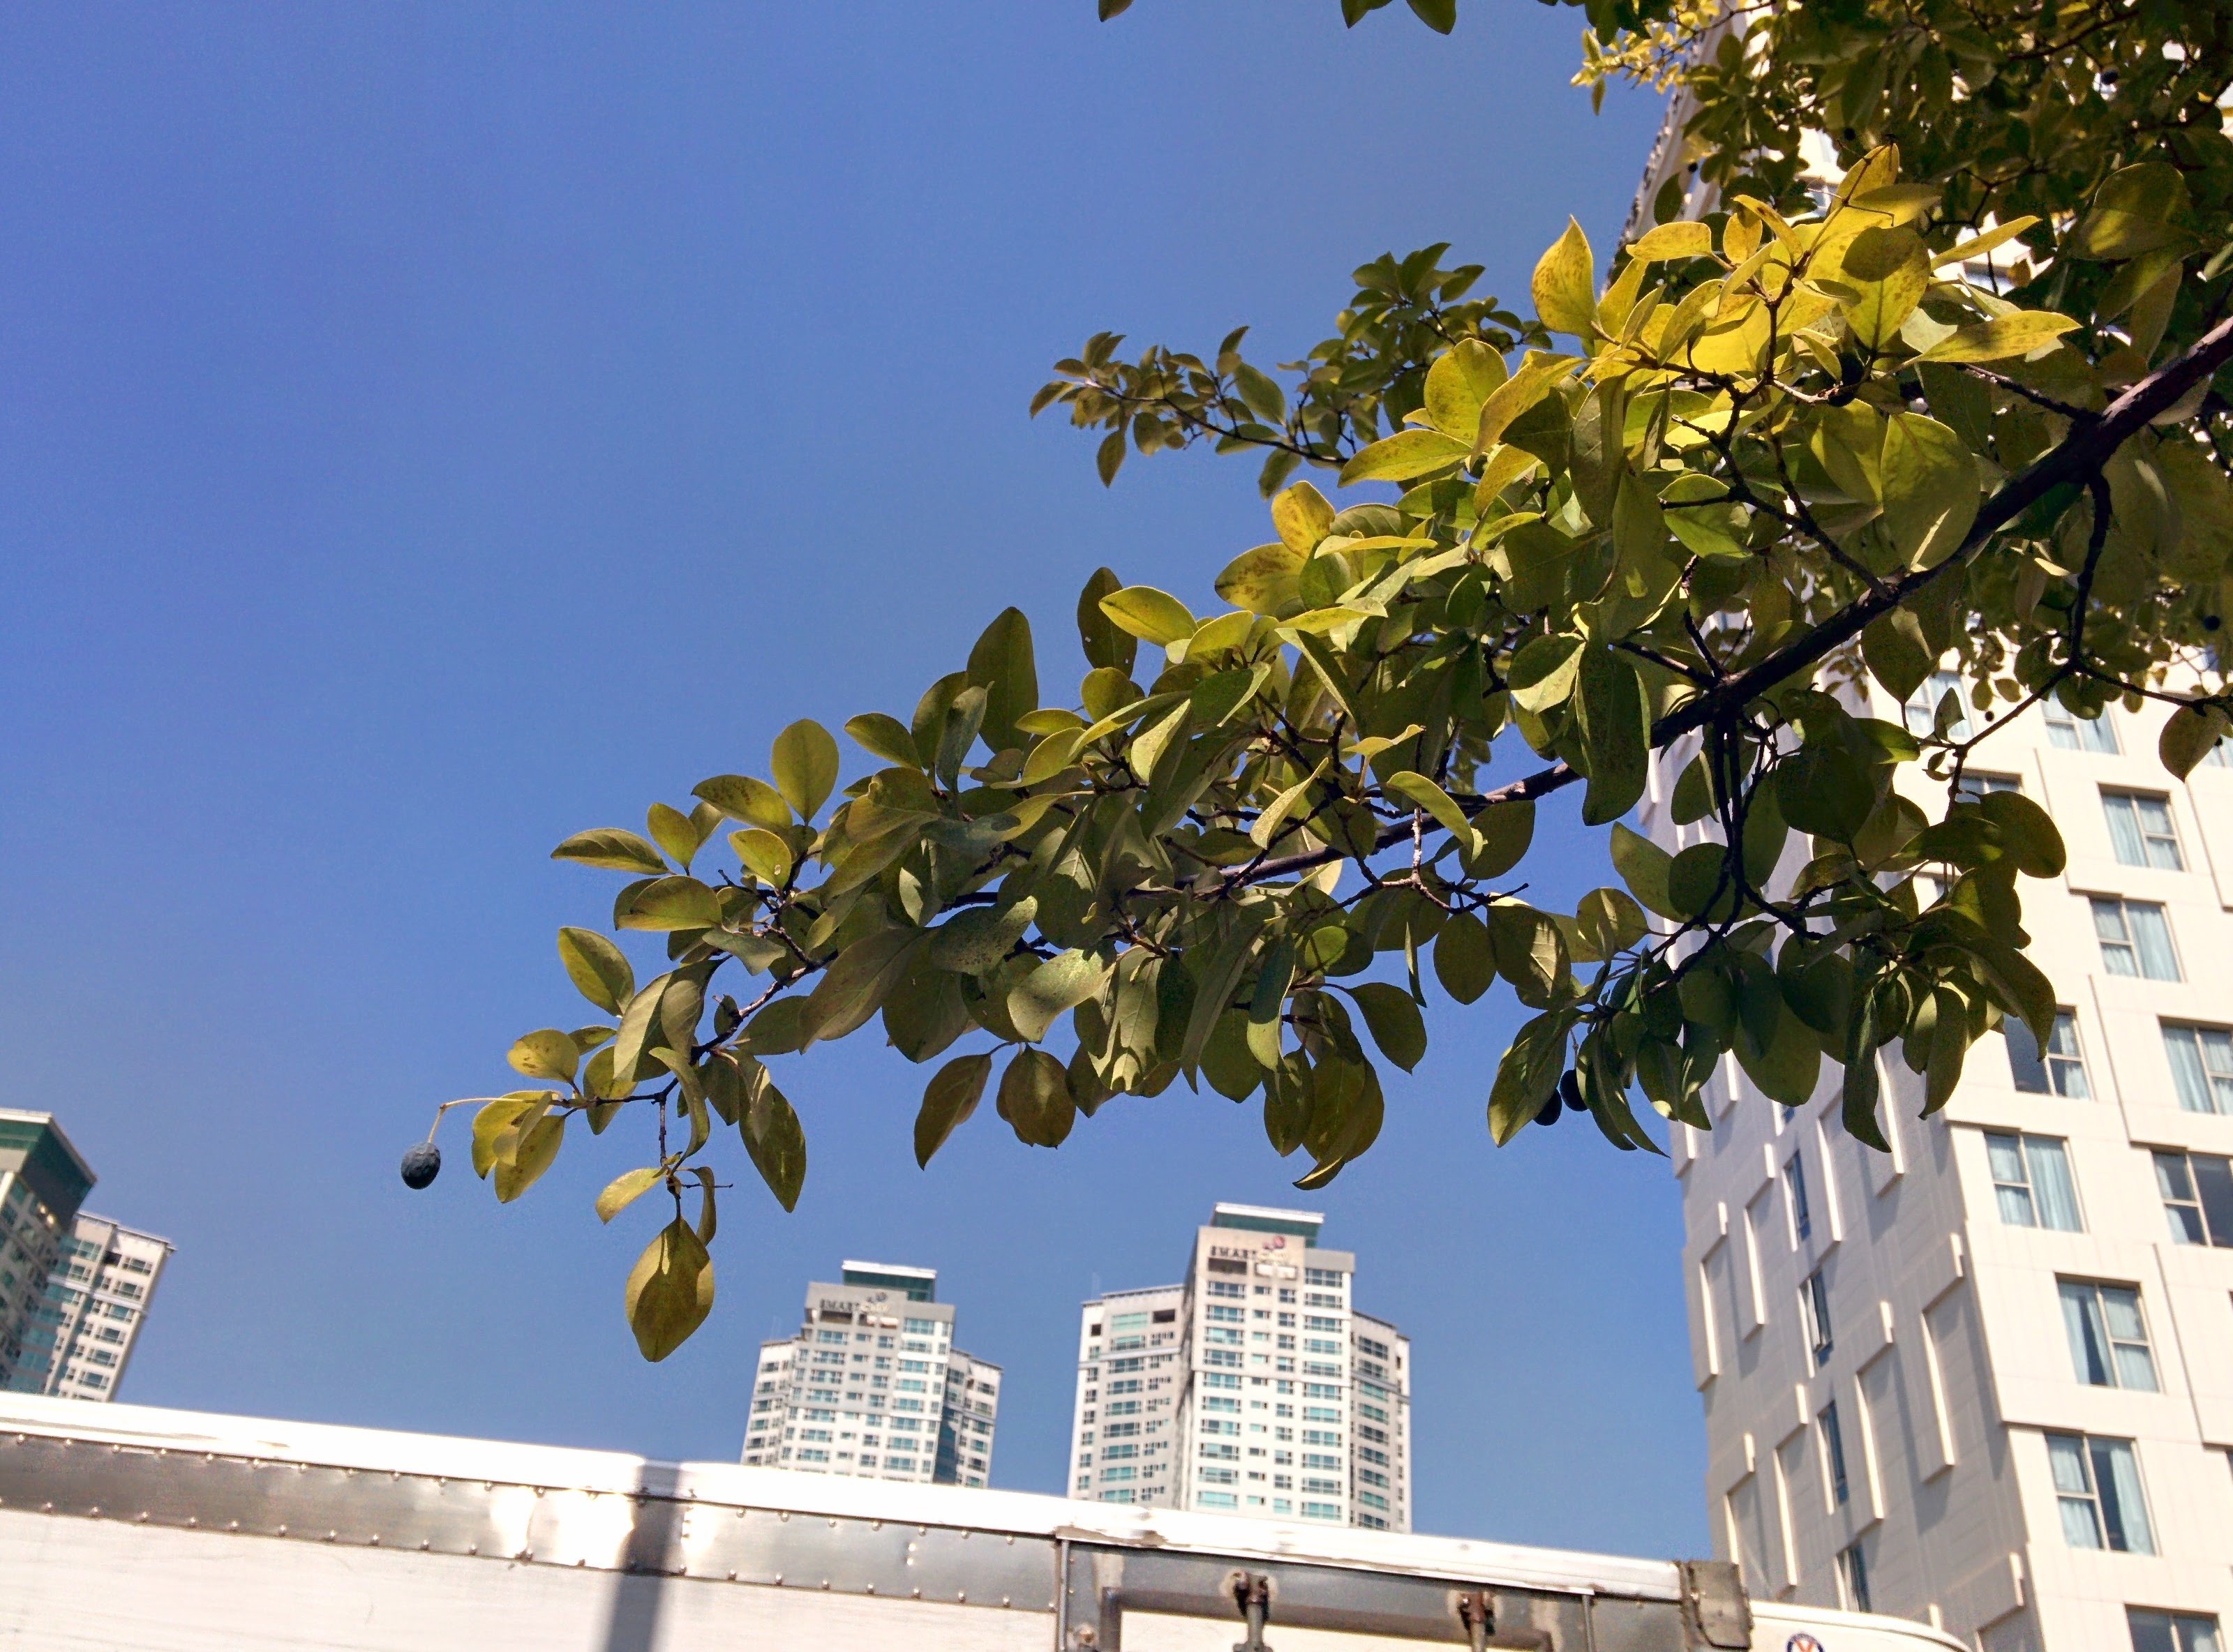 IMG_20151006_124746.jpg 블루베리를 닮은 검은색 열매가 열린 가로수, 이팝나무